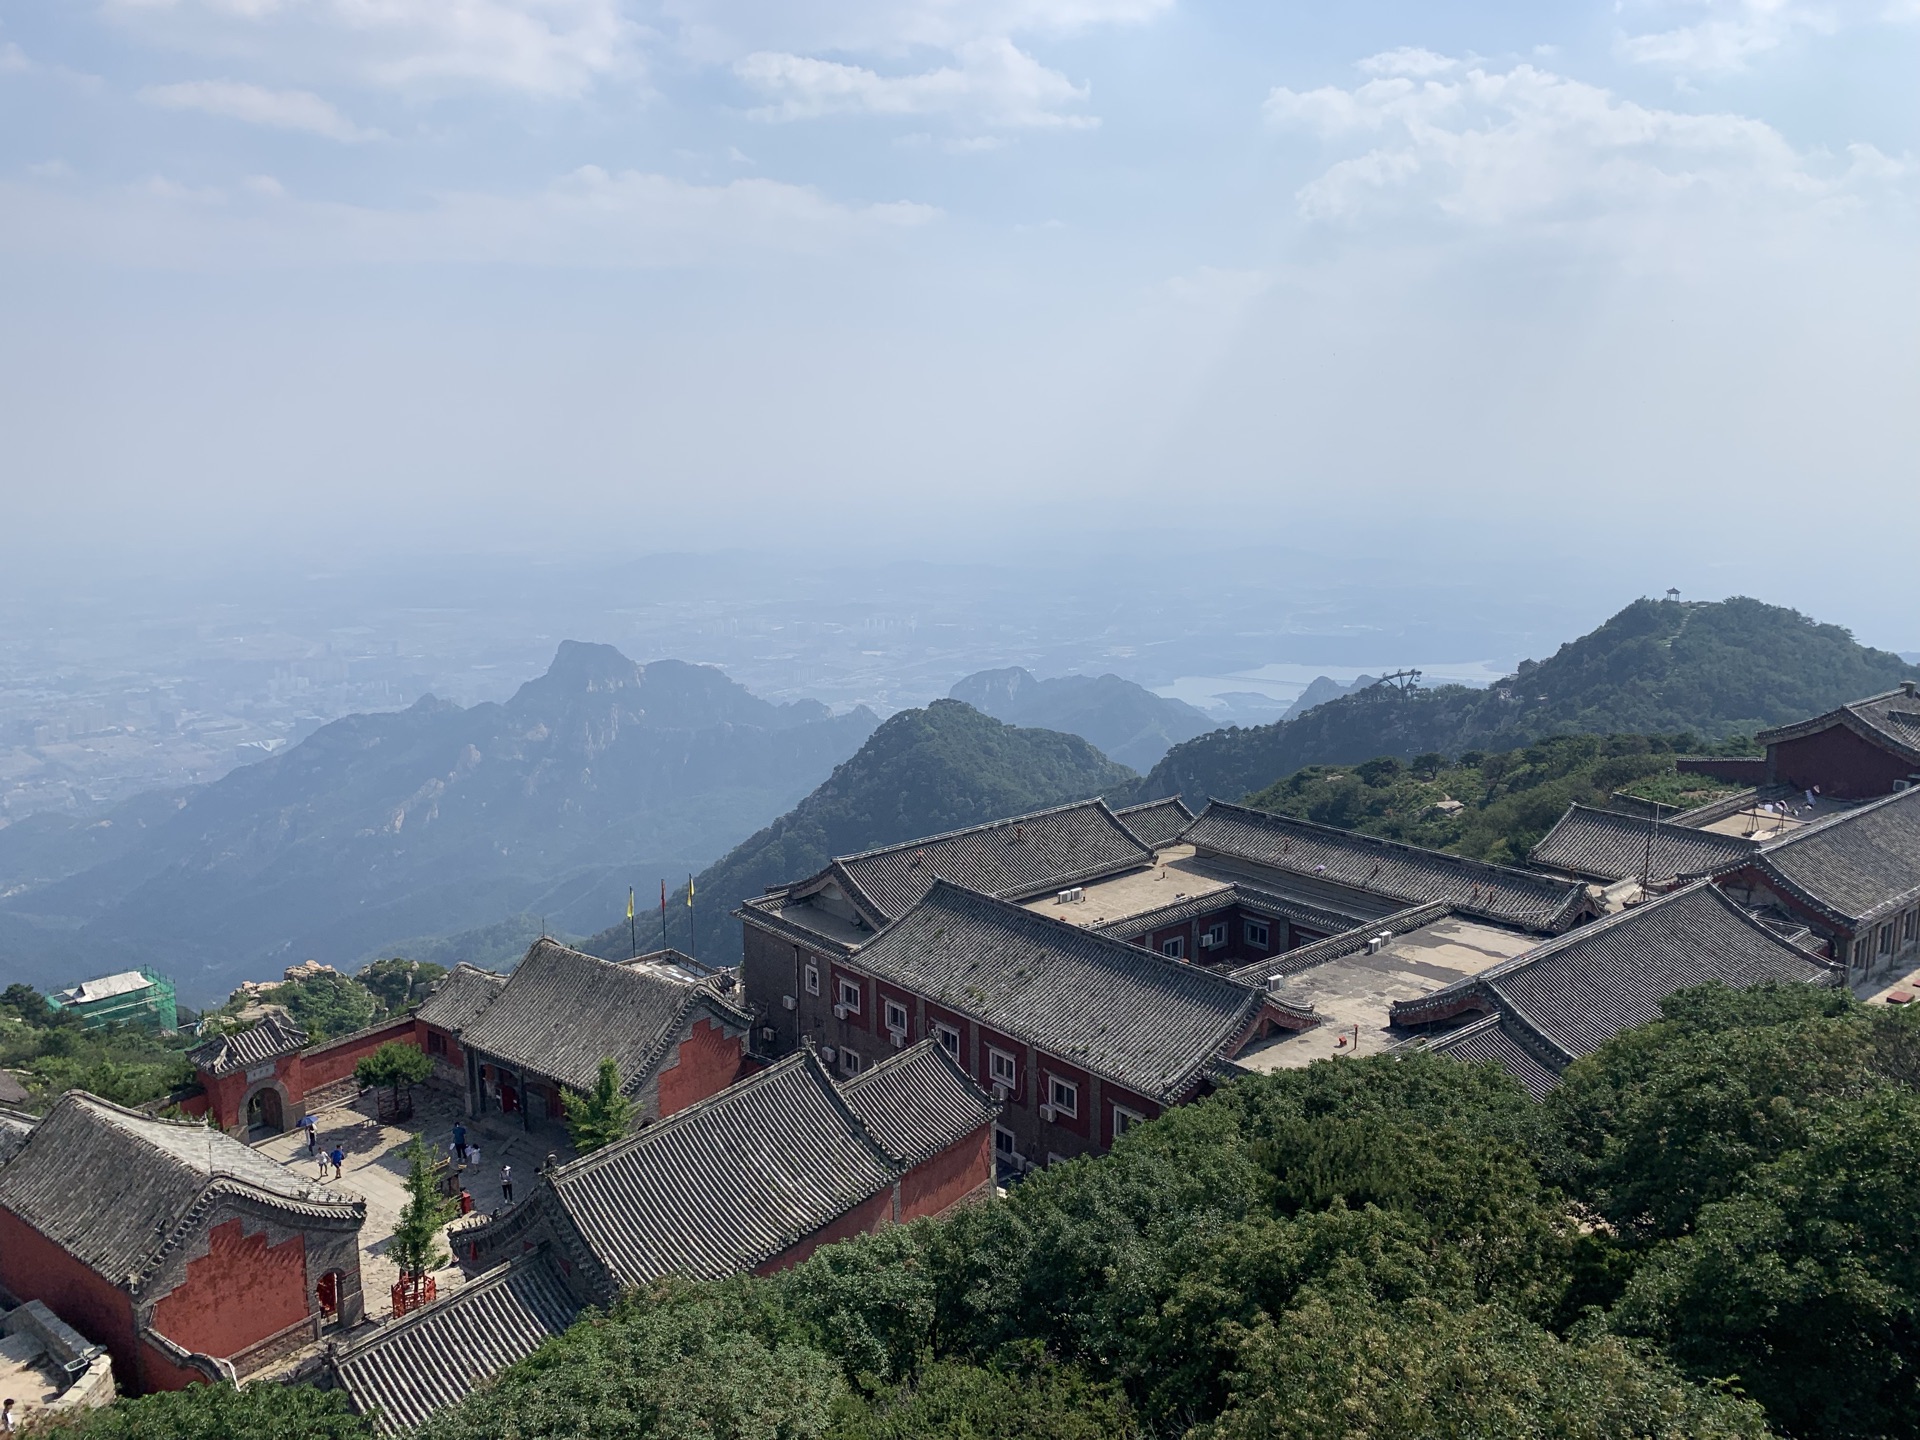 【携程攻略】泰山玉皇顶景点,泰山,中国五岳之一,在玉皇顶的入口处,有